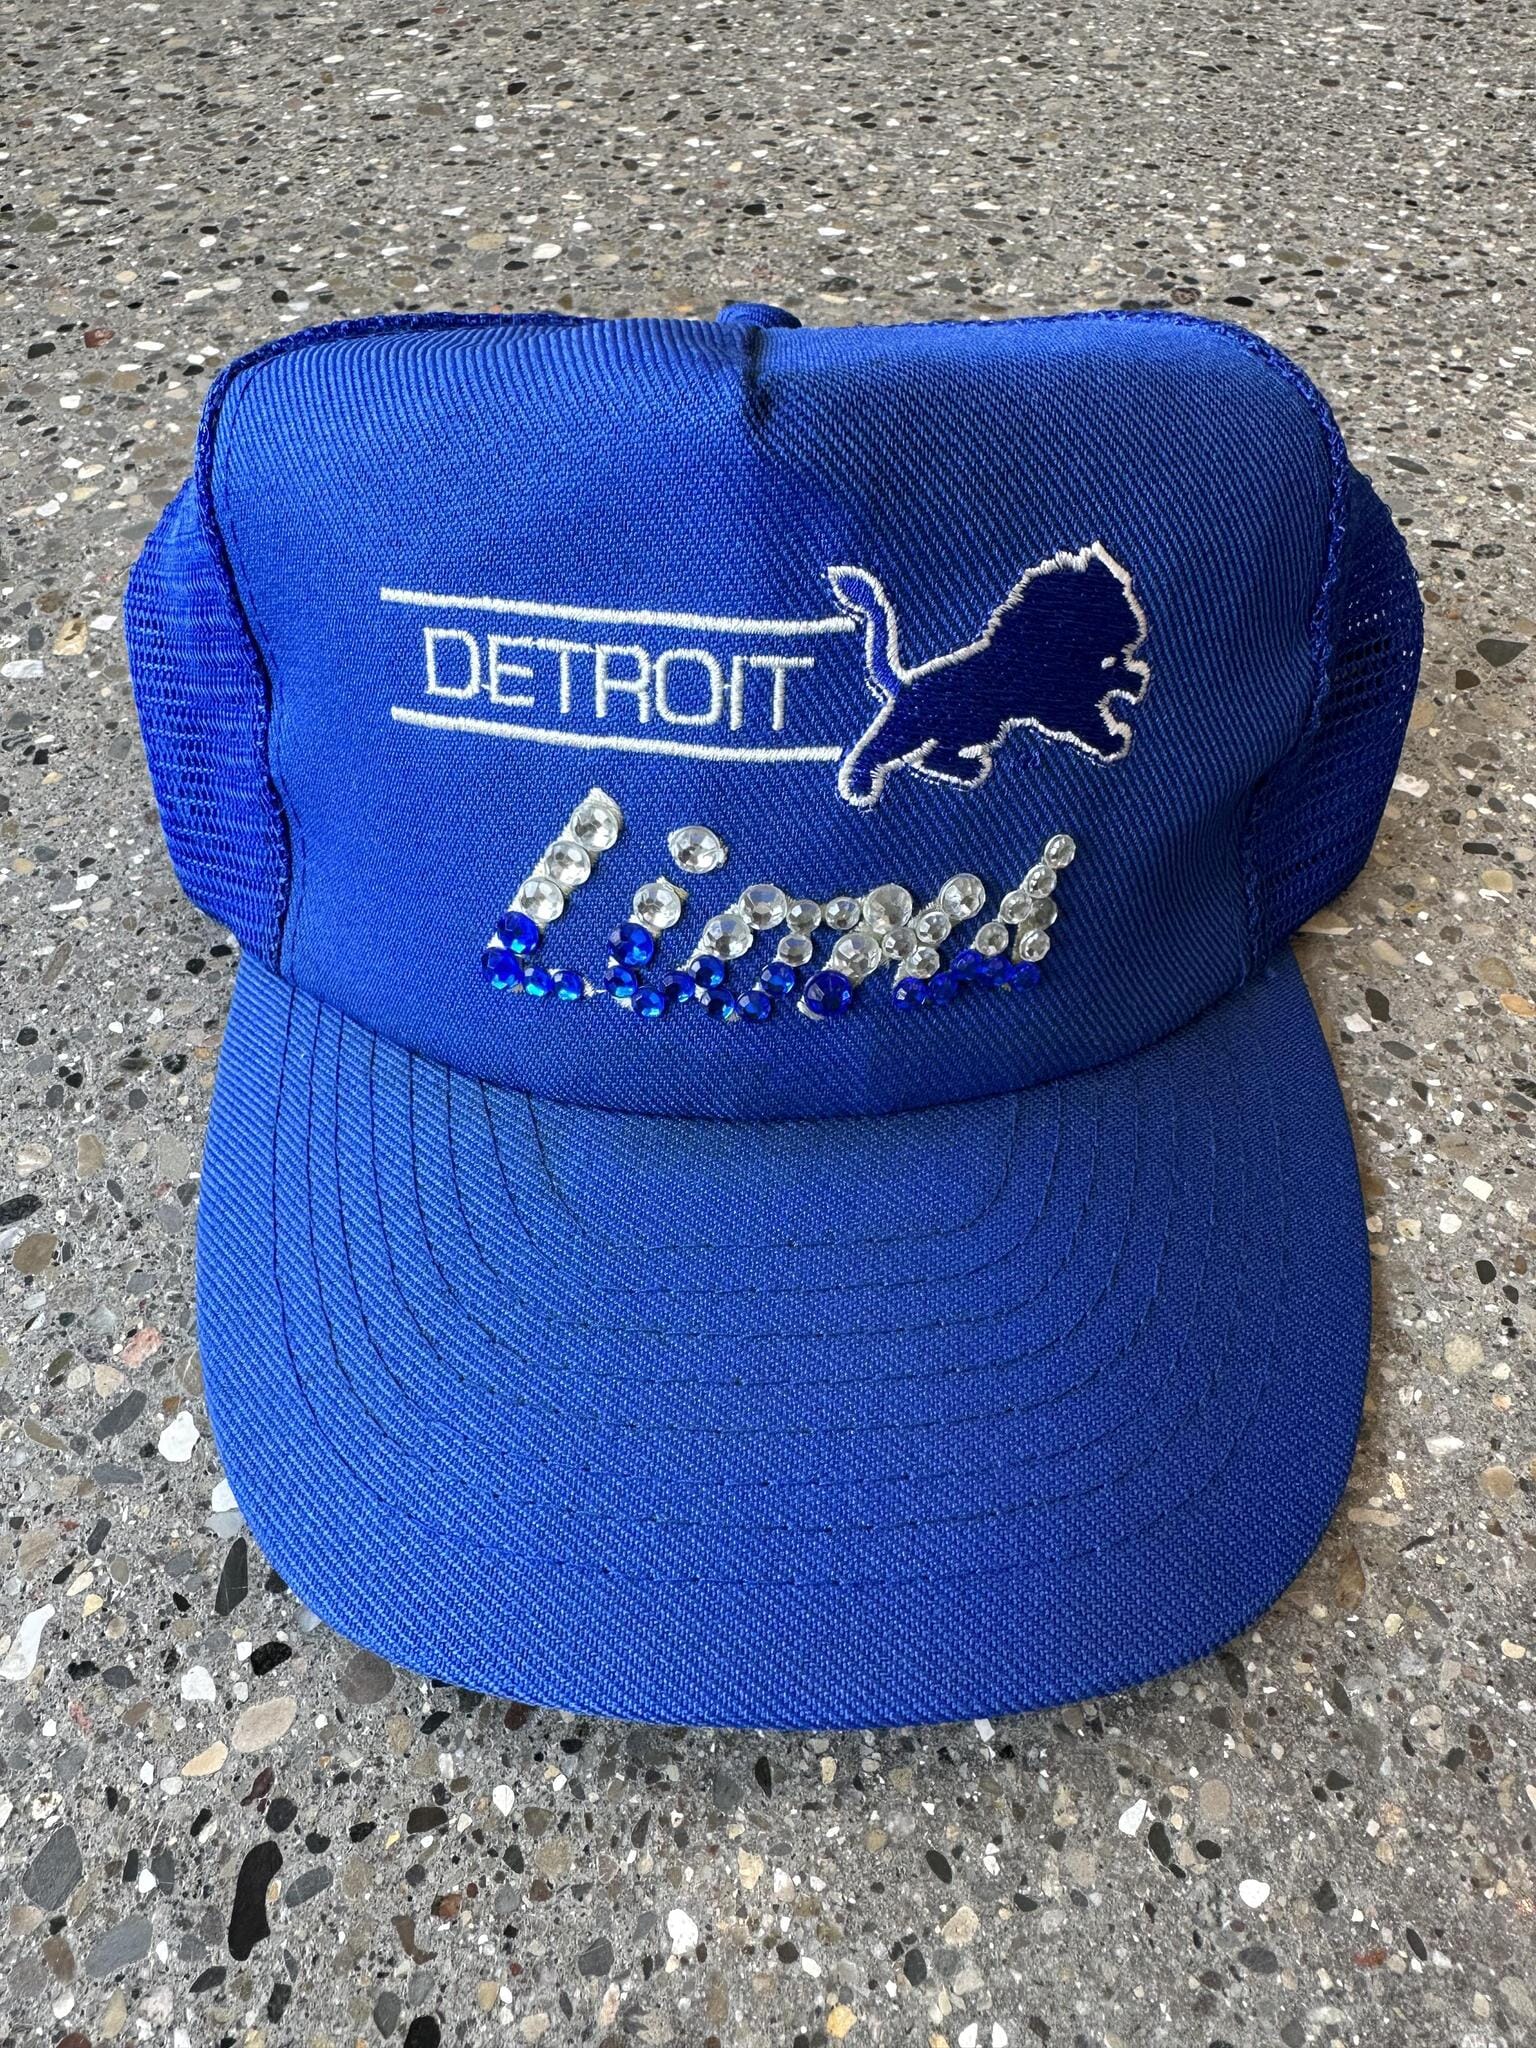 Detroit Lions Vintage Rhinestone Trucker Hat